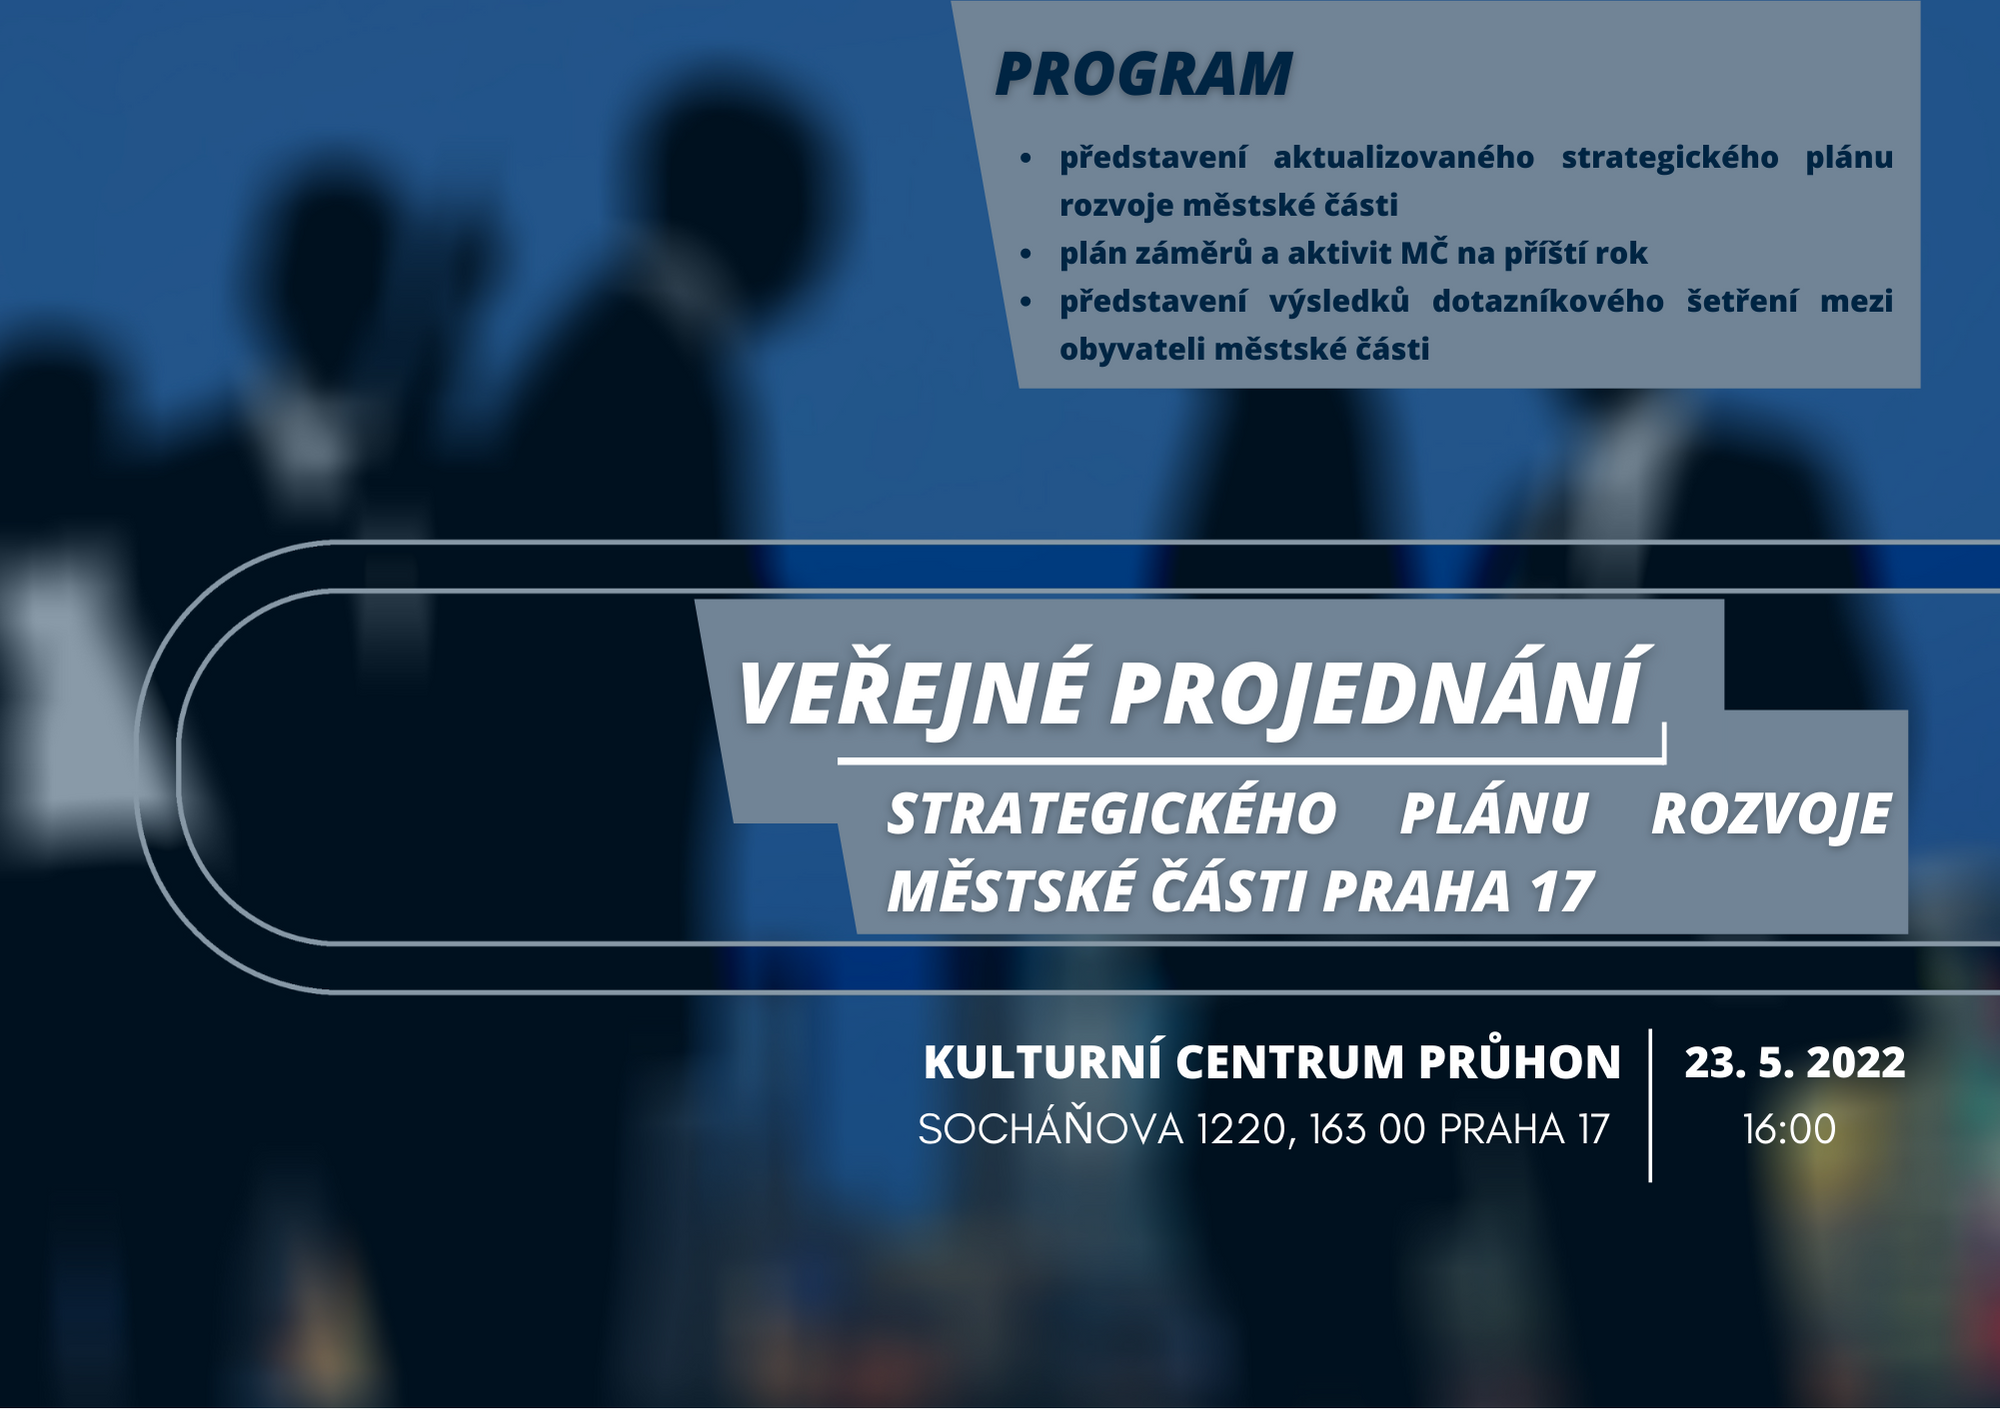 Pozvánka na veřejné projednání strategického plánu rozvoje MČ Praha 17 23.5.2022